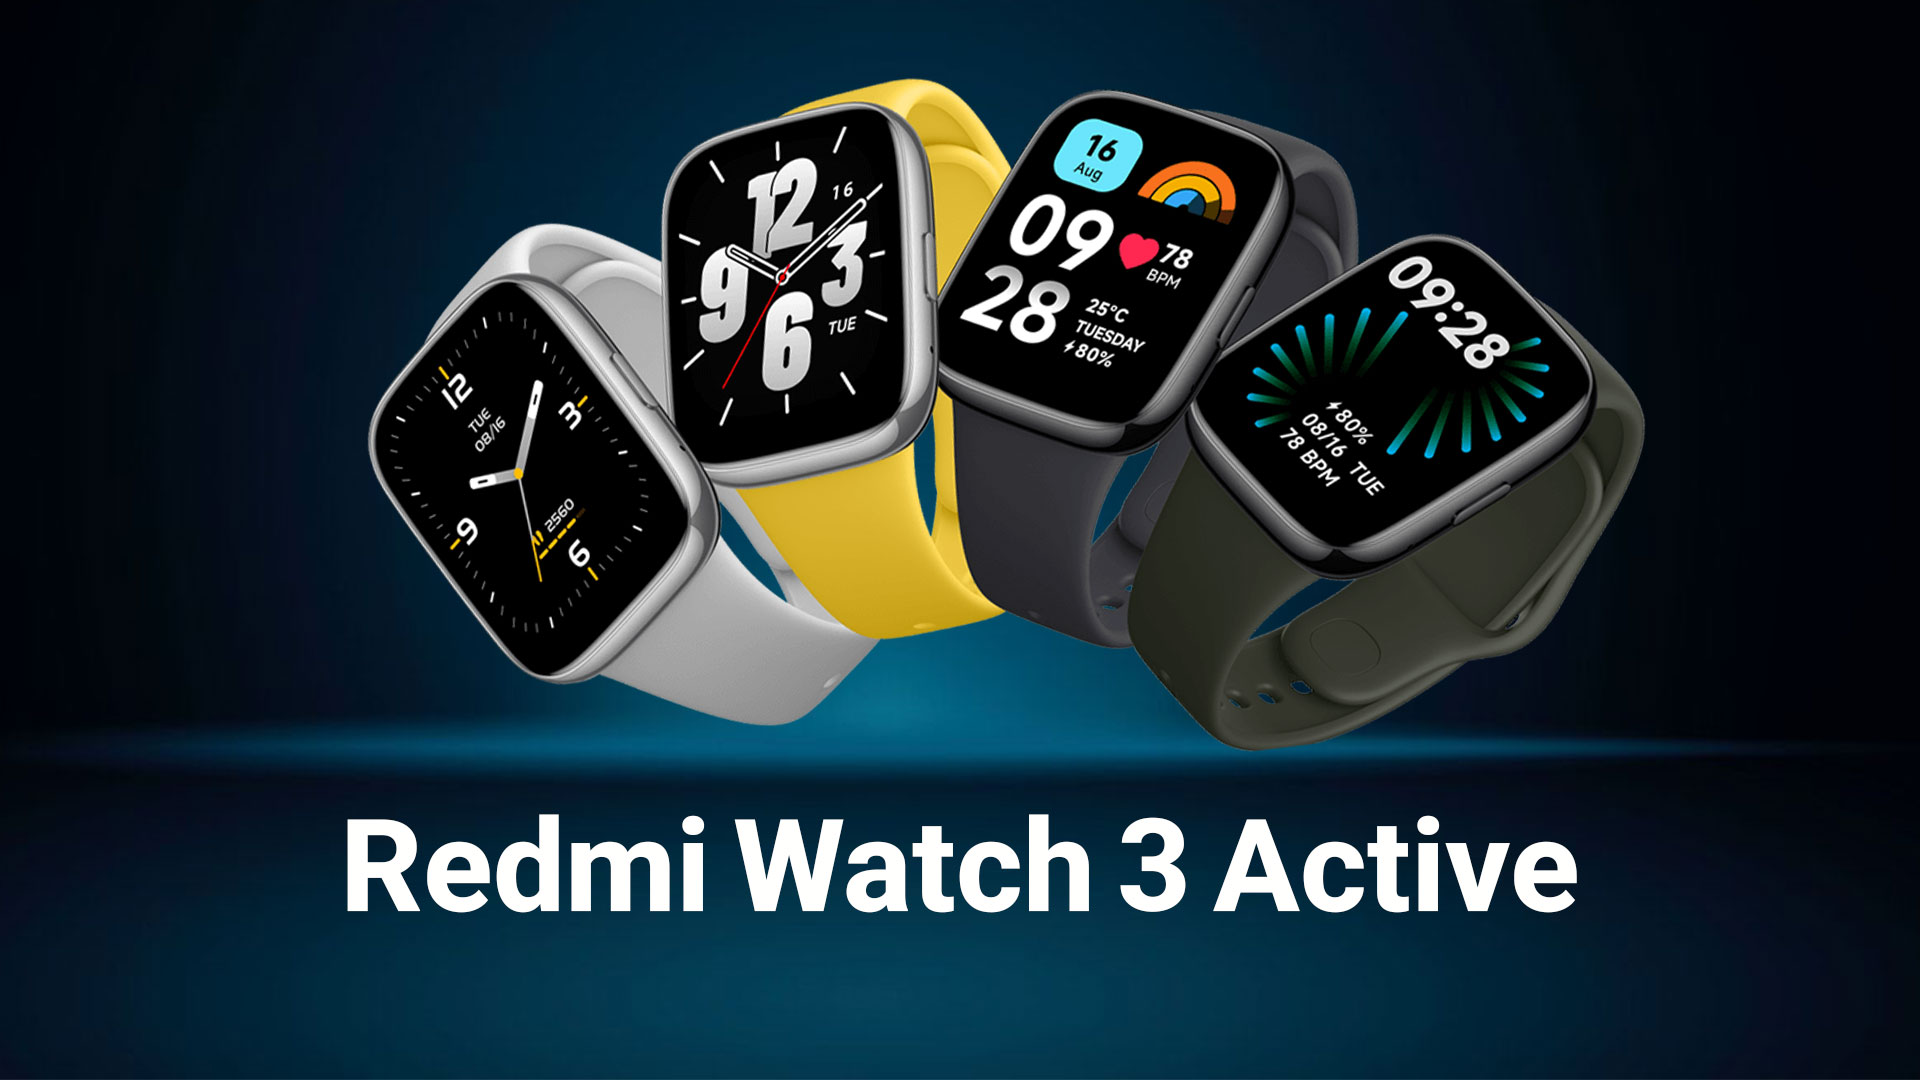 قیمت redmi watch 3 active و خرید ردمی واچ 3 اکتیو شیائومی